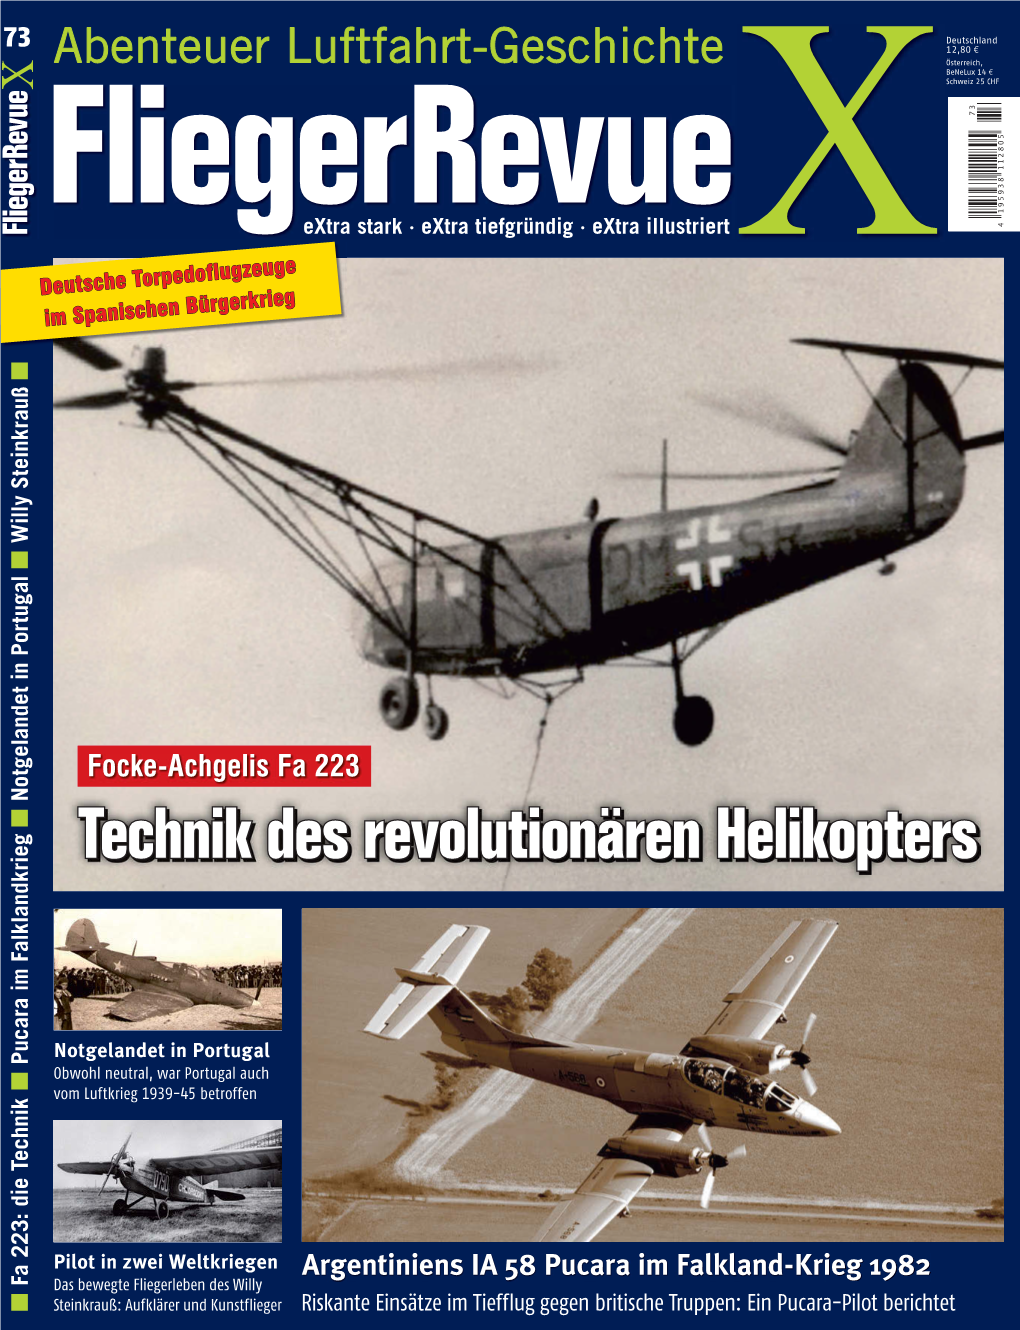 Fliegerrevue X 73 Leseprobe